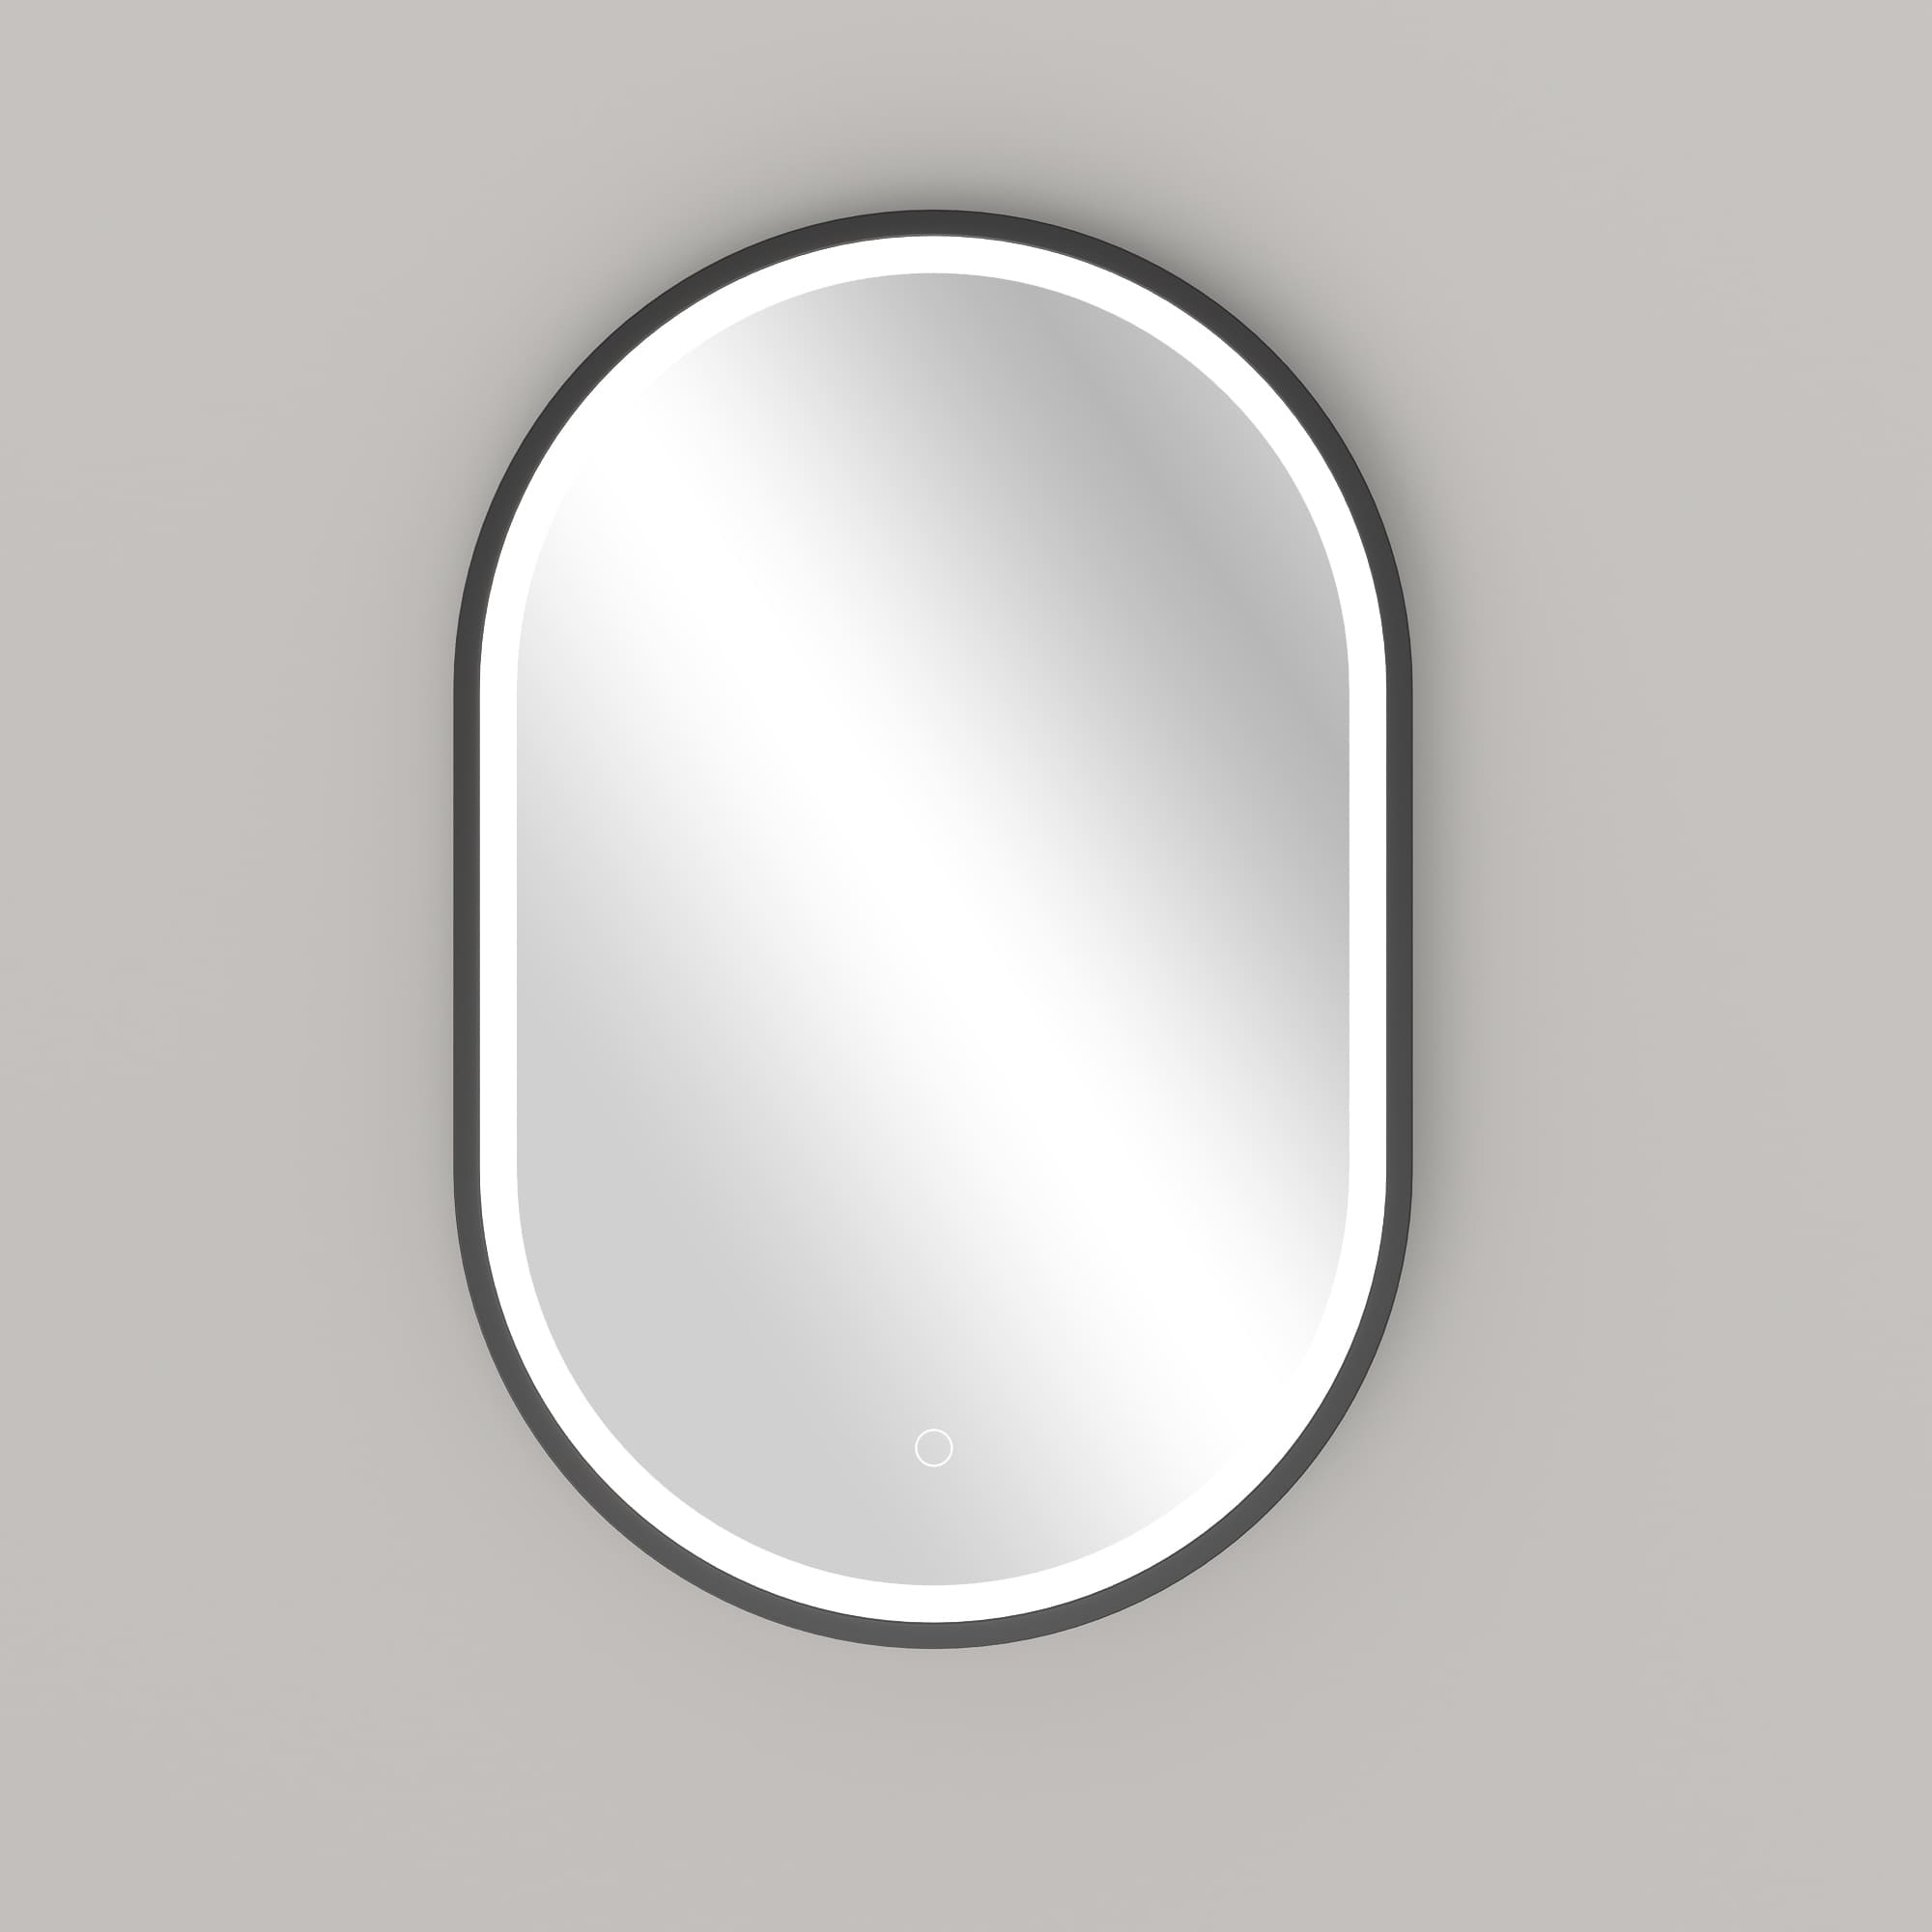 LED Spiegel Oval Antifrost 40x60 oder 55x100 Schwarz Matt Warm-/Kaltlichteinstellung Badspiegel